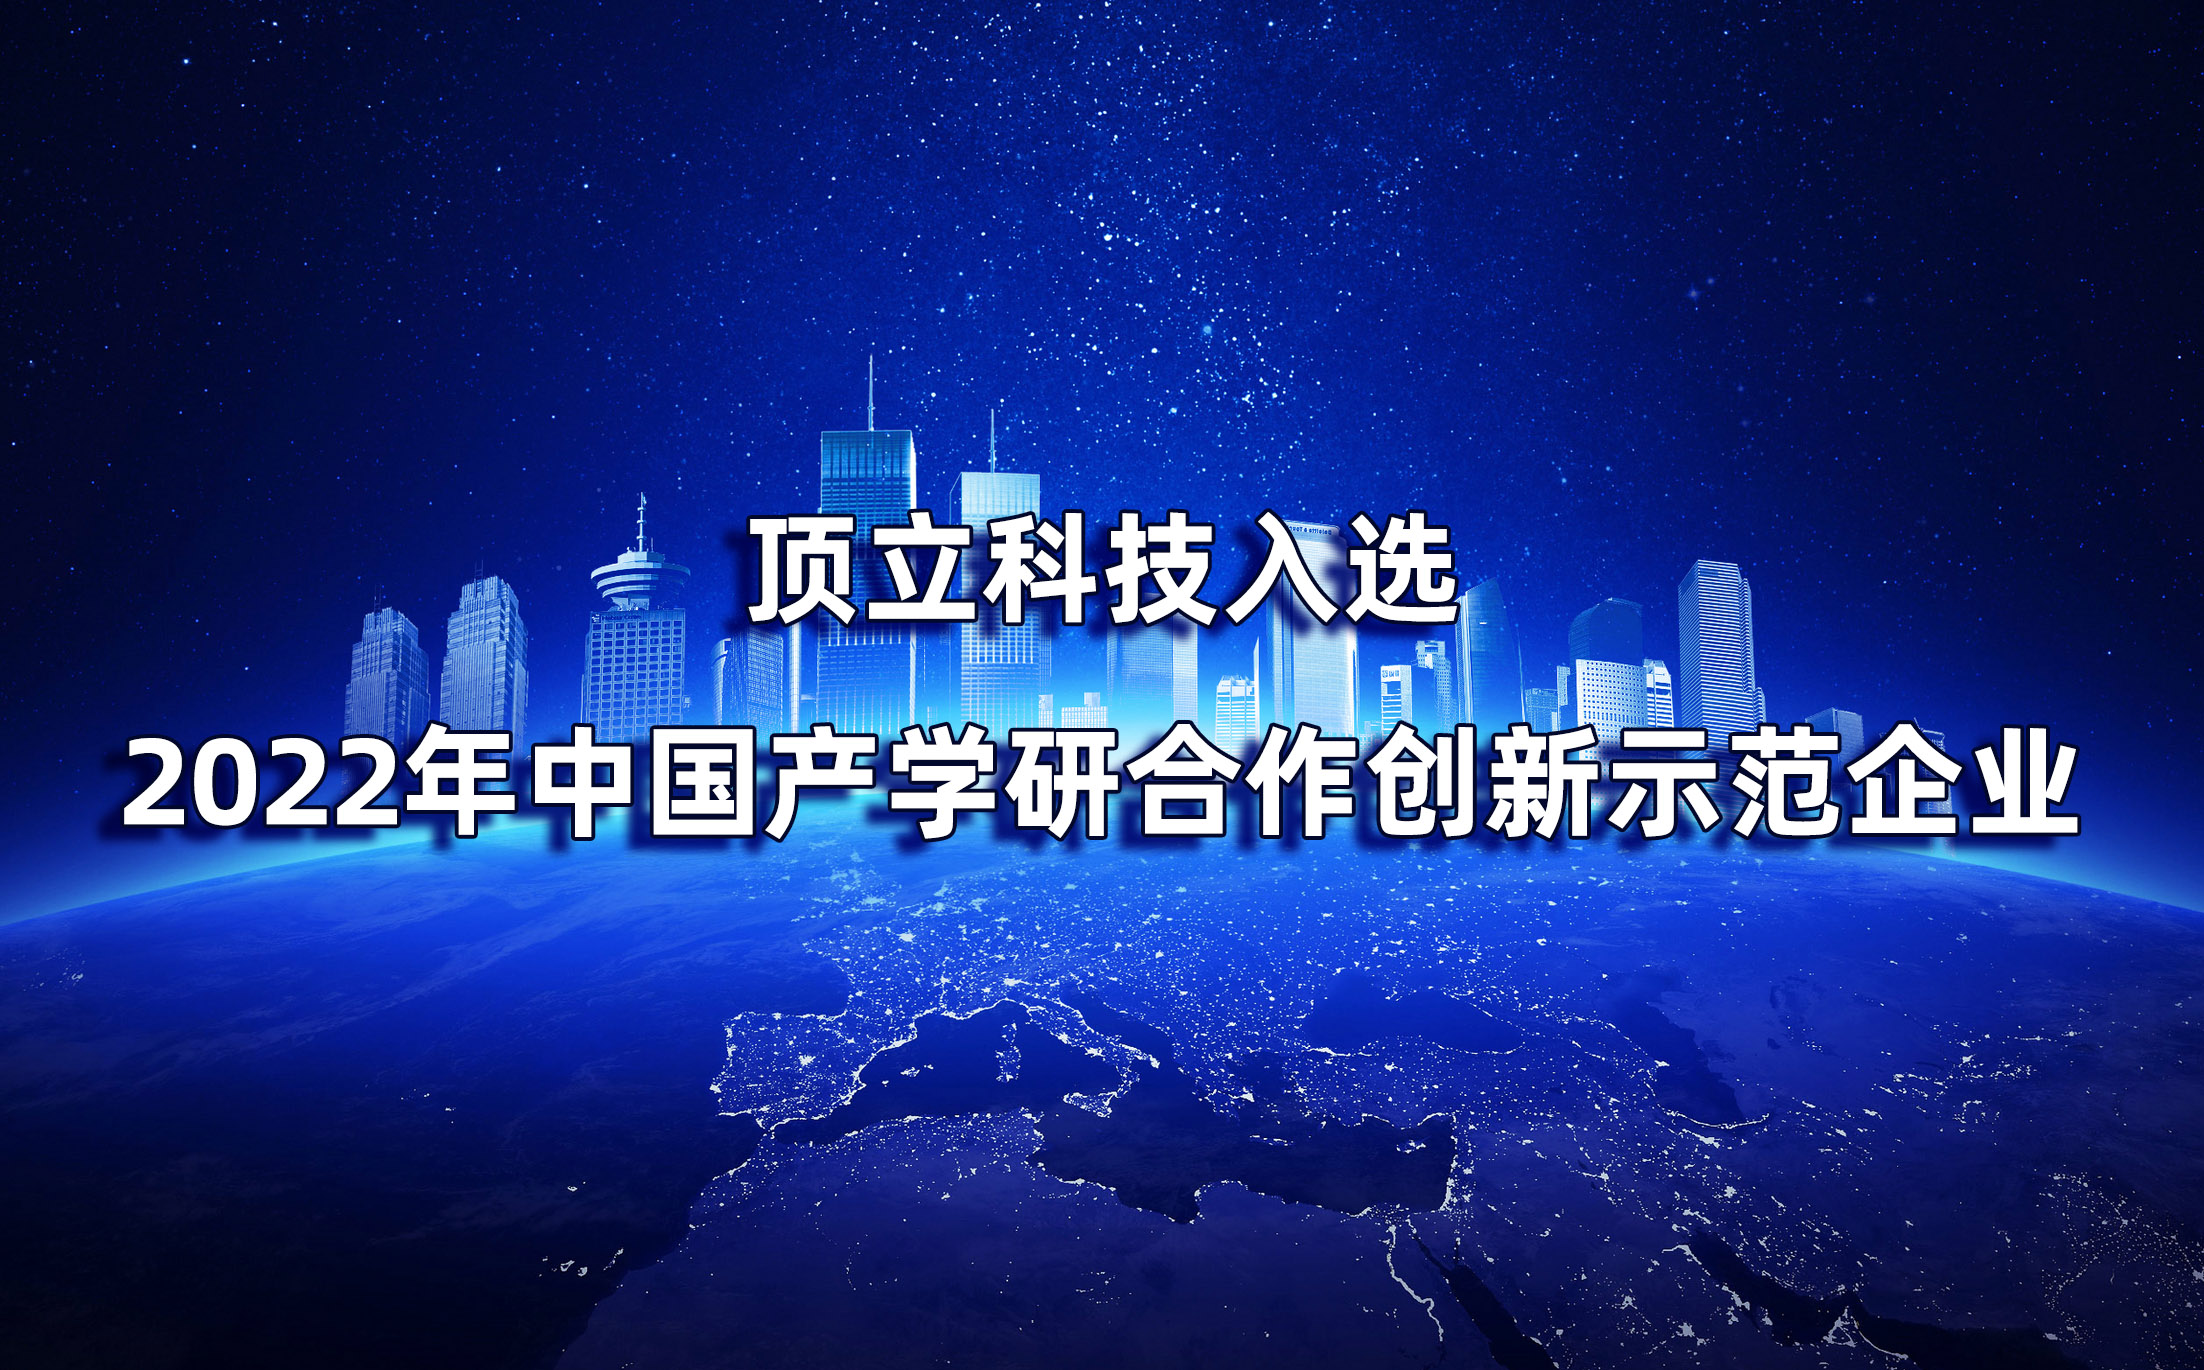 湖南仅2家|顶立科技入选2022年中国产学研合作创新示范企业